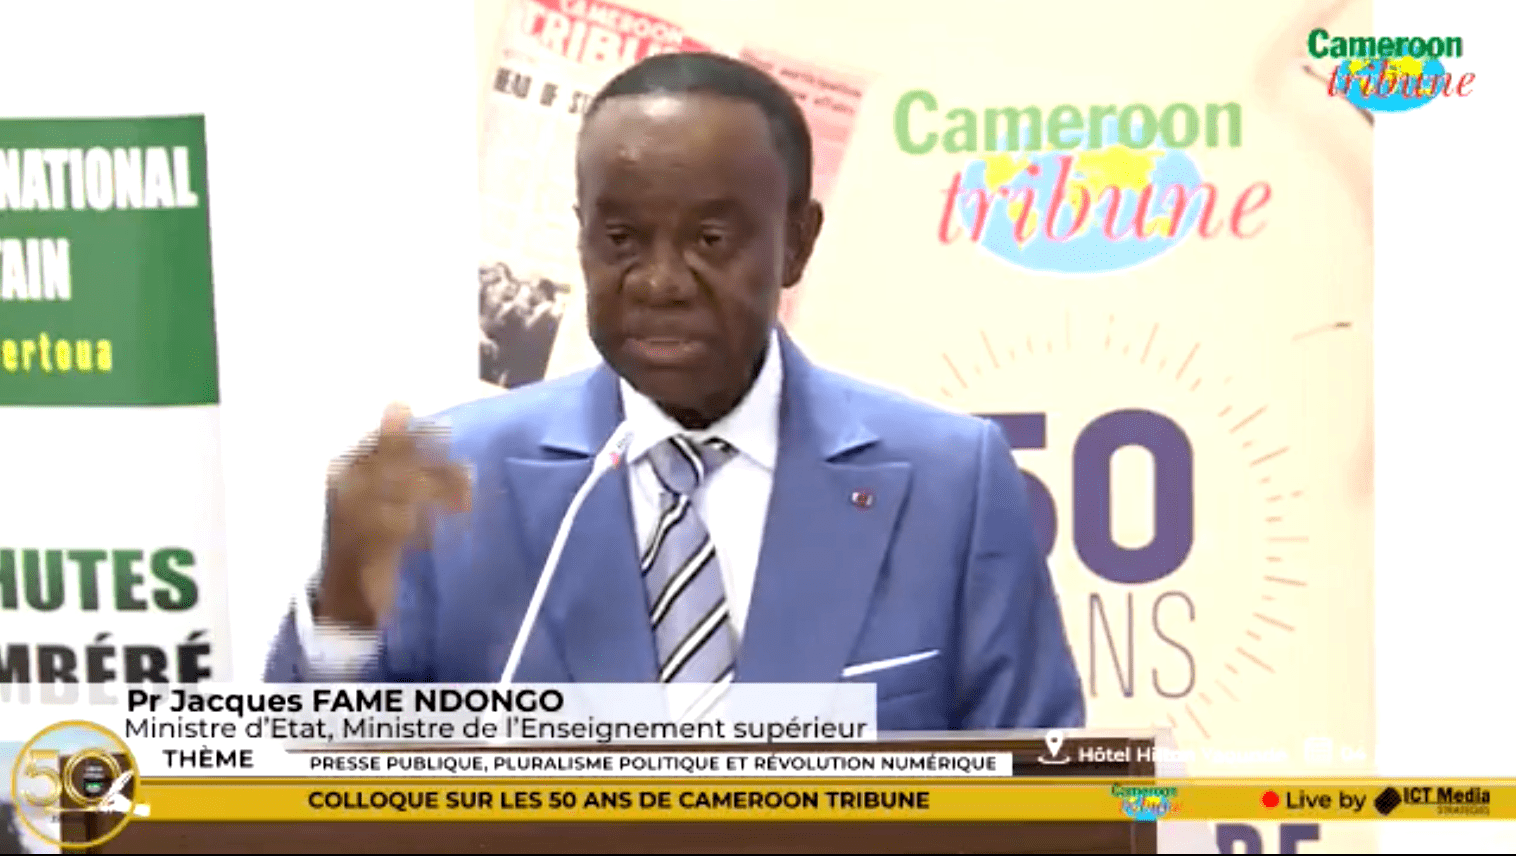 Pr Jacques FAME NDONGO: "L’adaptabilité et la mise à niveau de ses compétences pour un journaliste de l’ère du numérique est obligatoire"